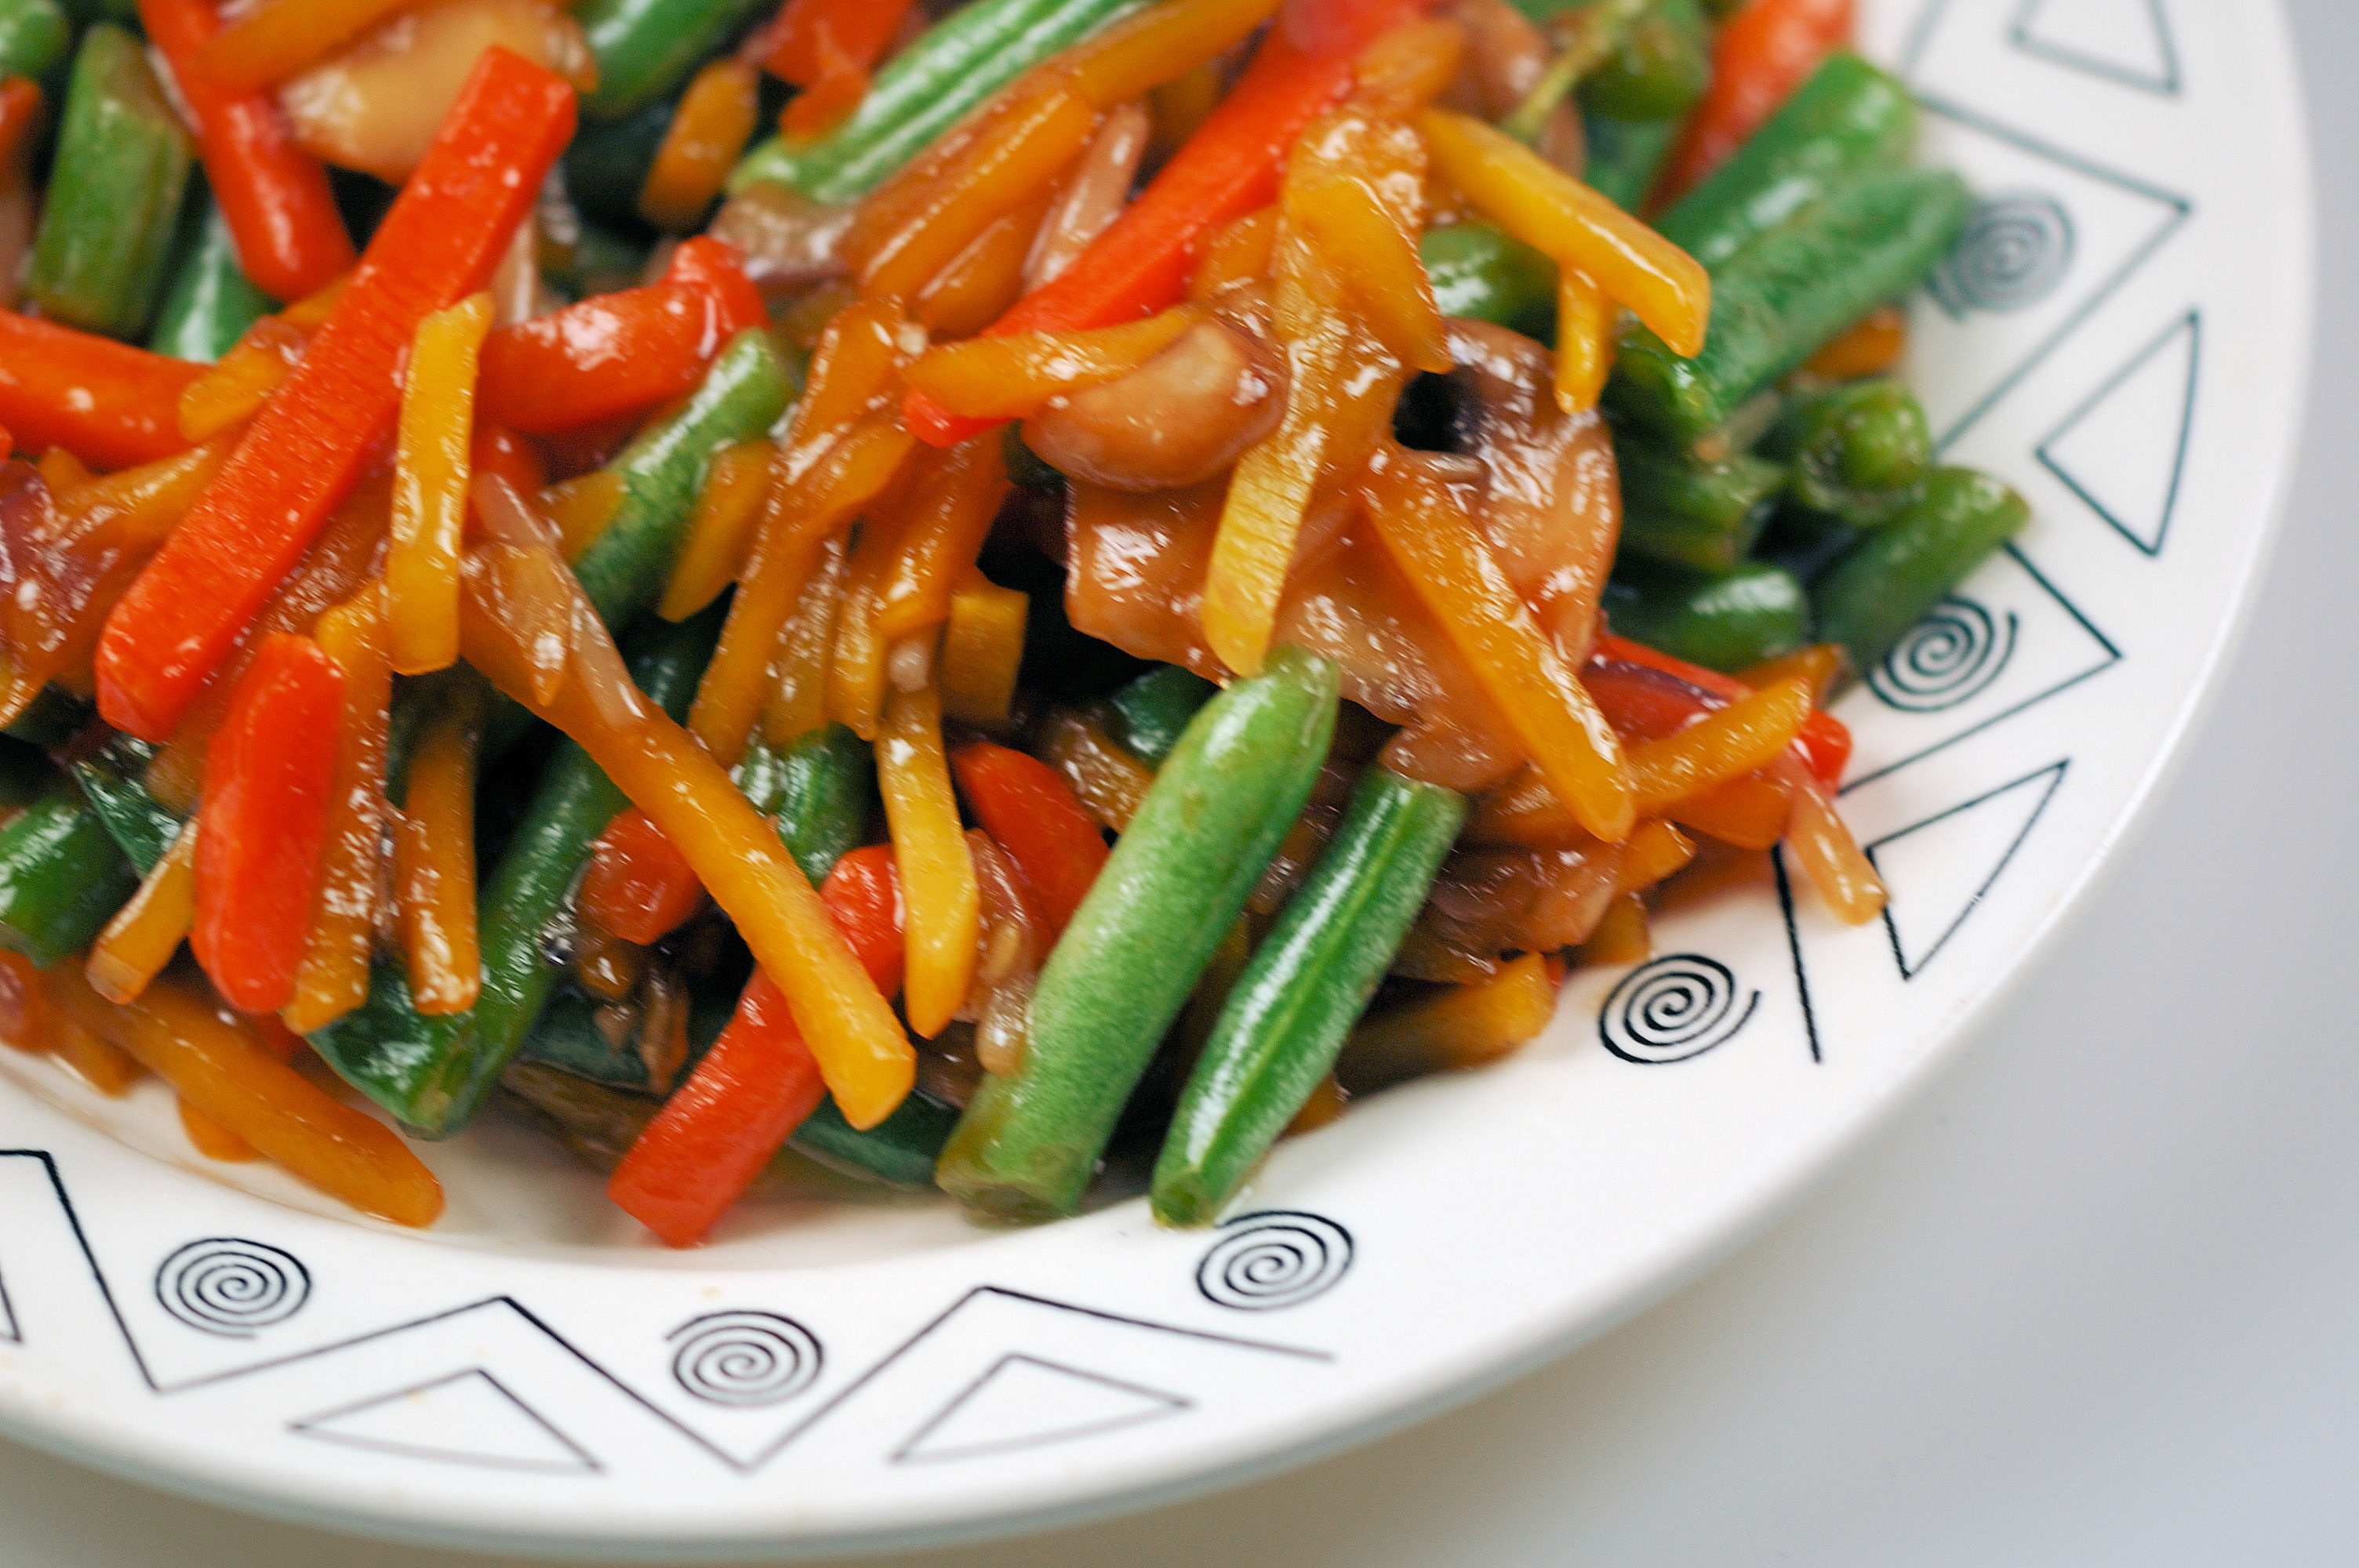 Тайната на вкусните зеленчуци по китайски е разкрита Подробности четете